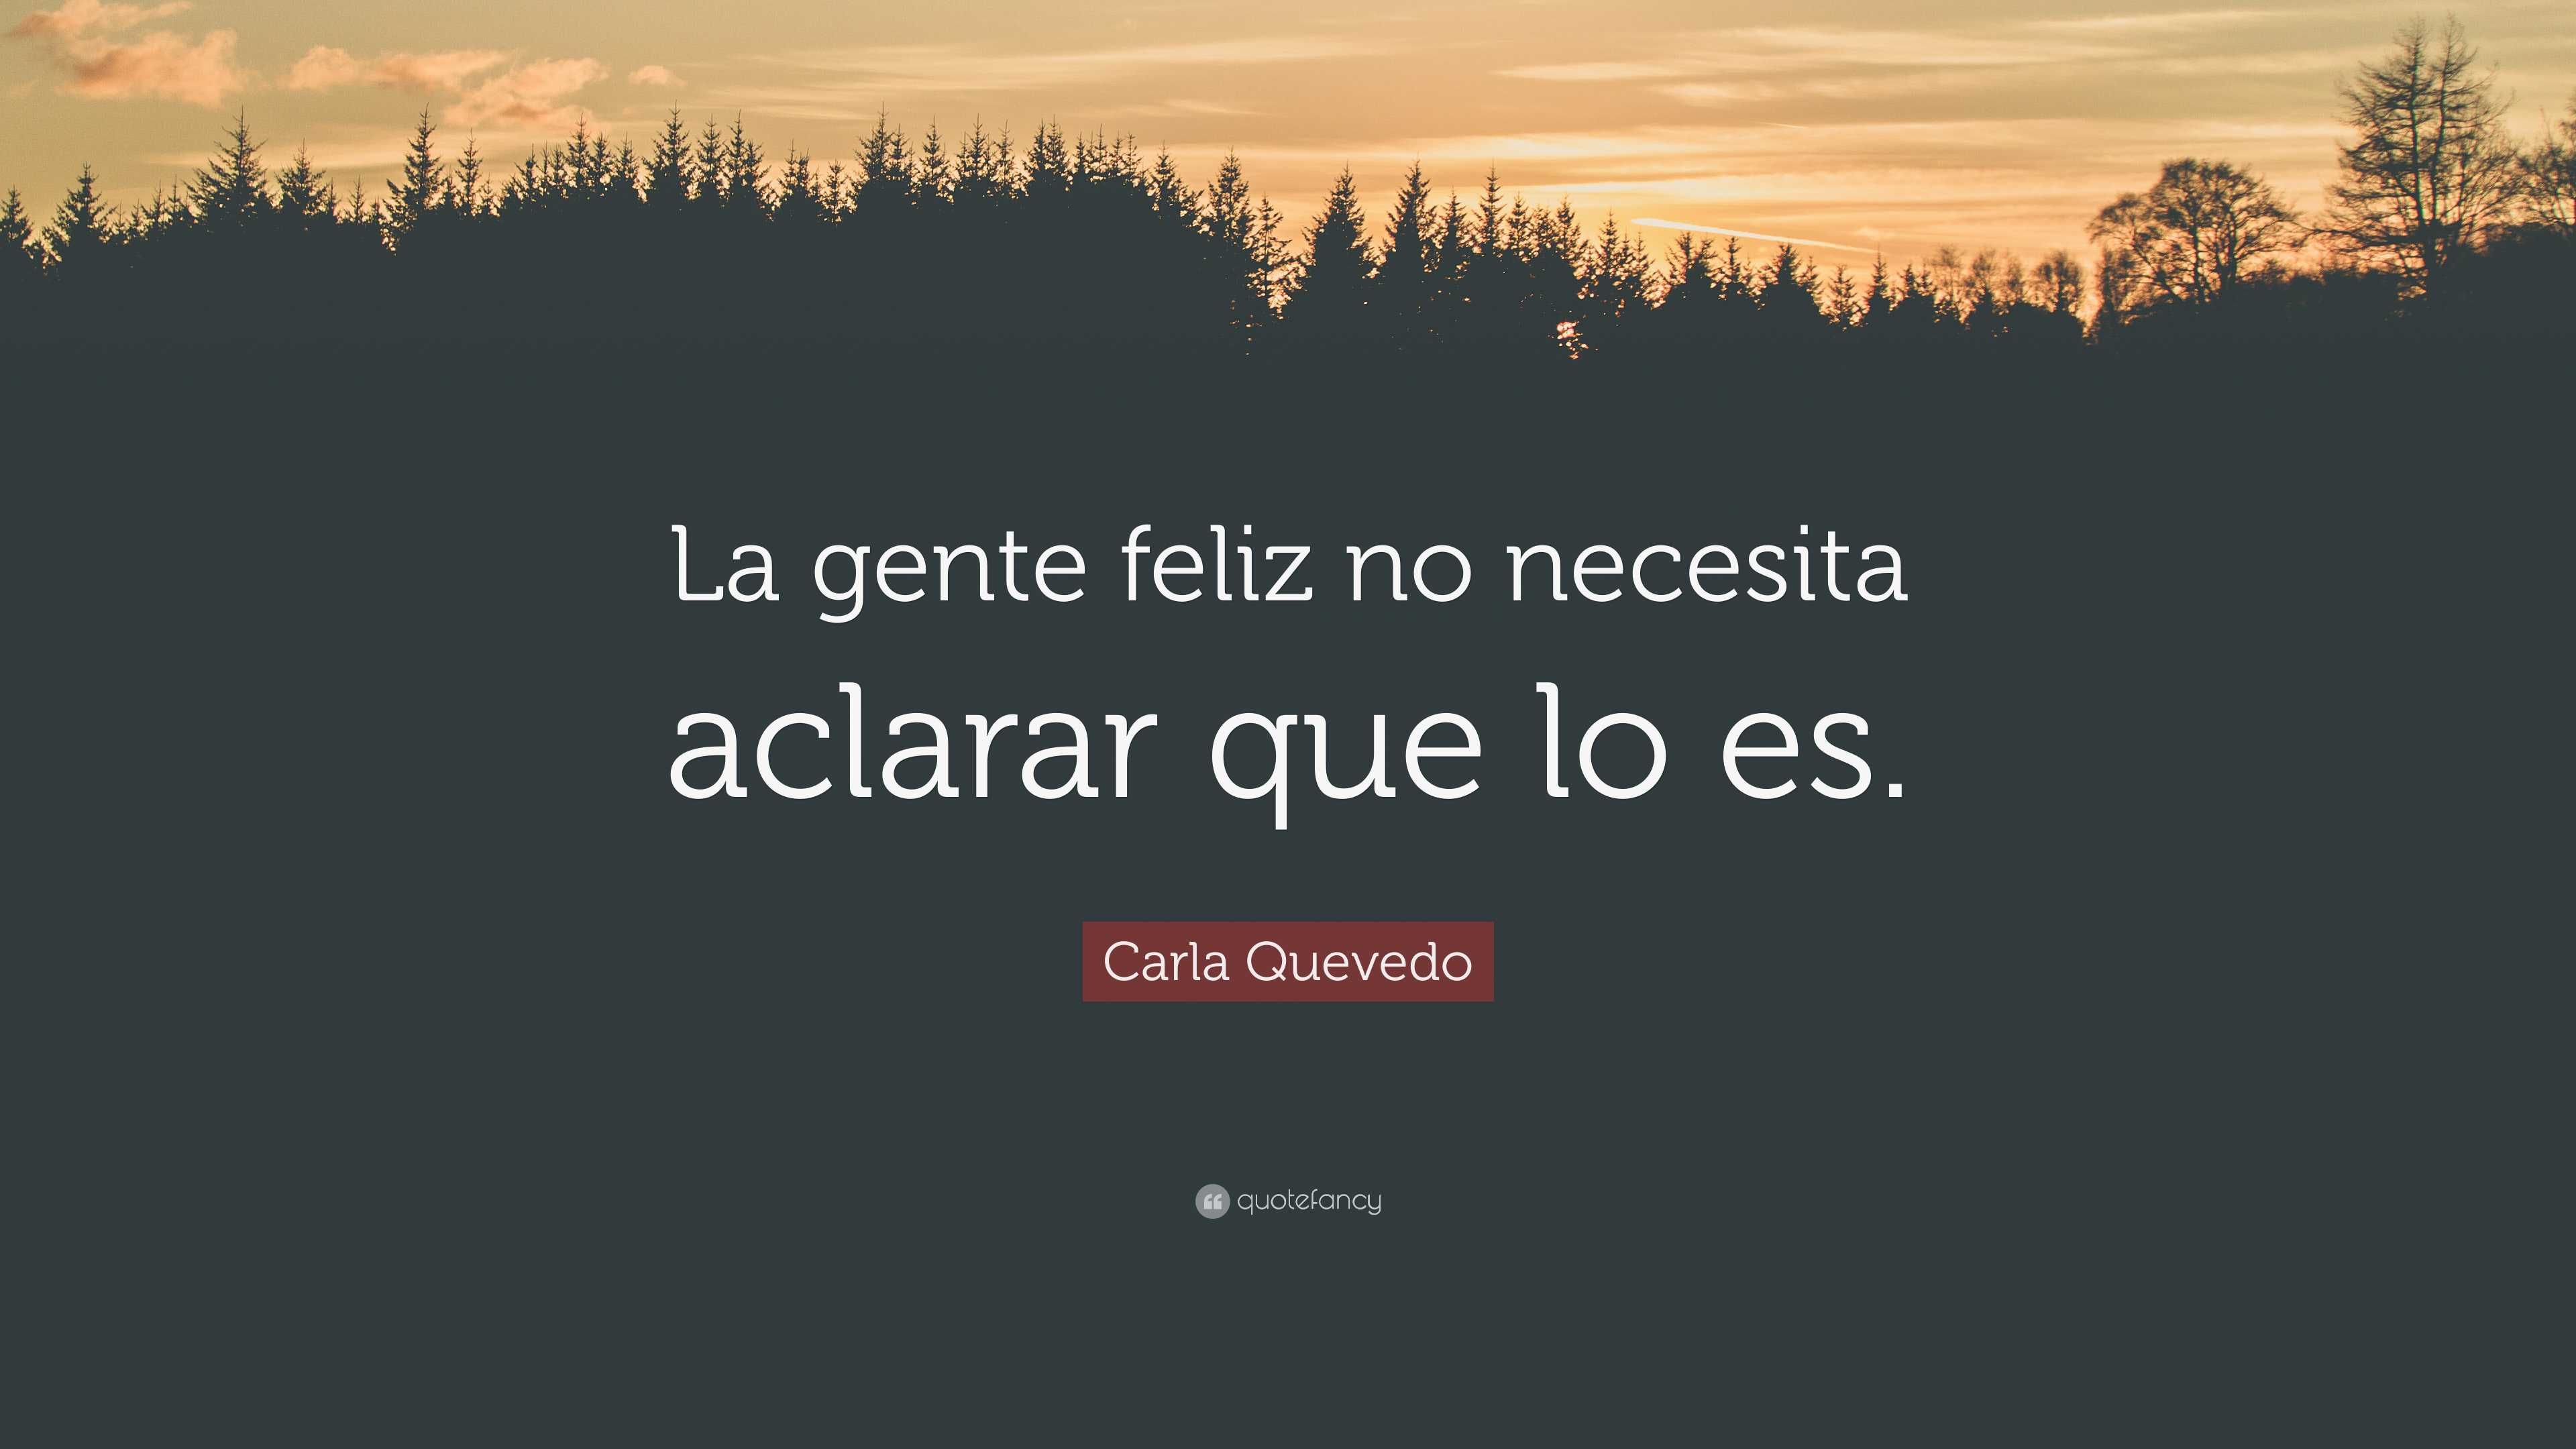 Carla Quevedo Quote: “La gente feliz no necesita aclarar que lo es.”